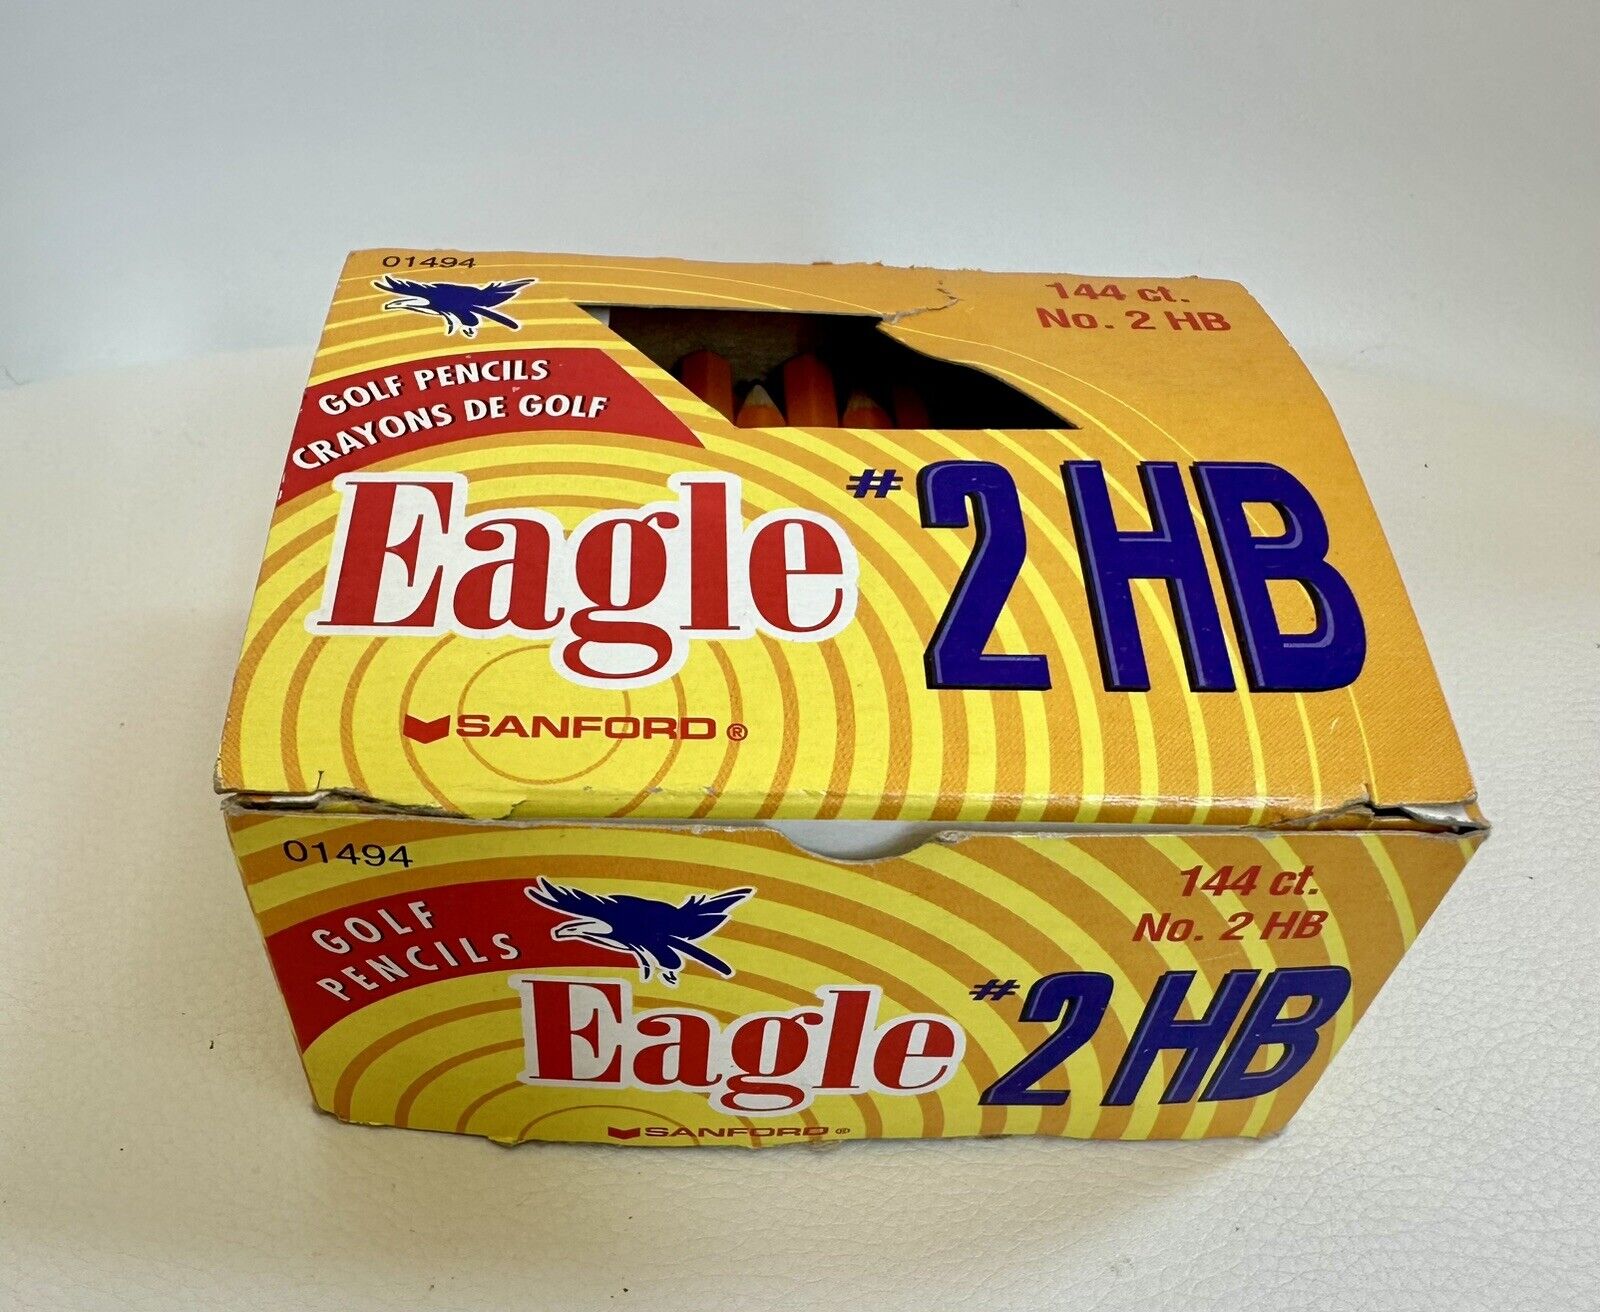 Vintage Eagle Golf Pencils #2HB 144 CT